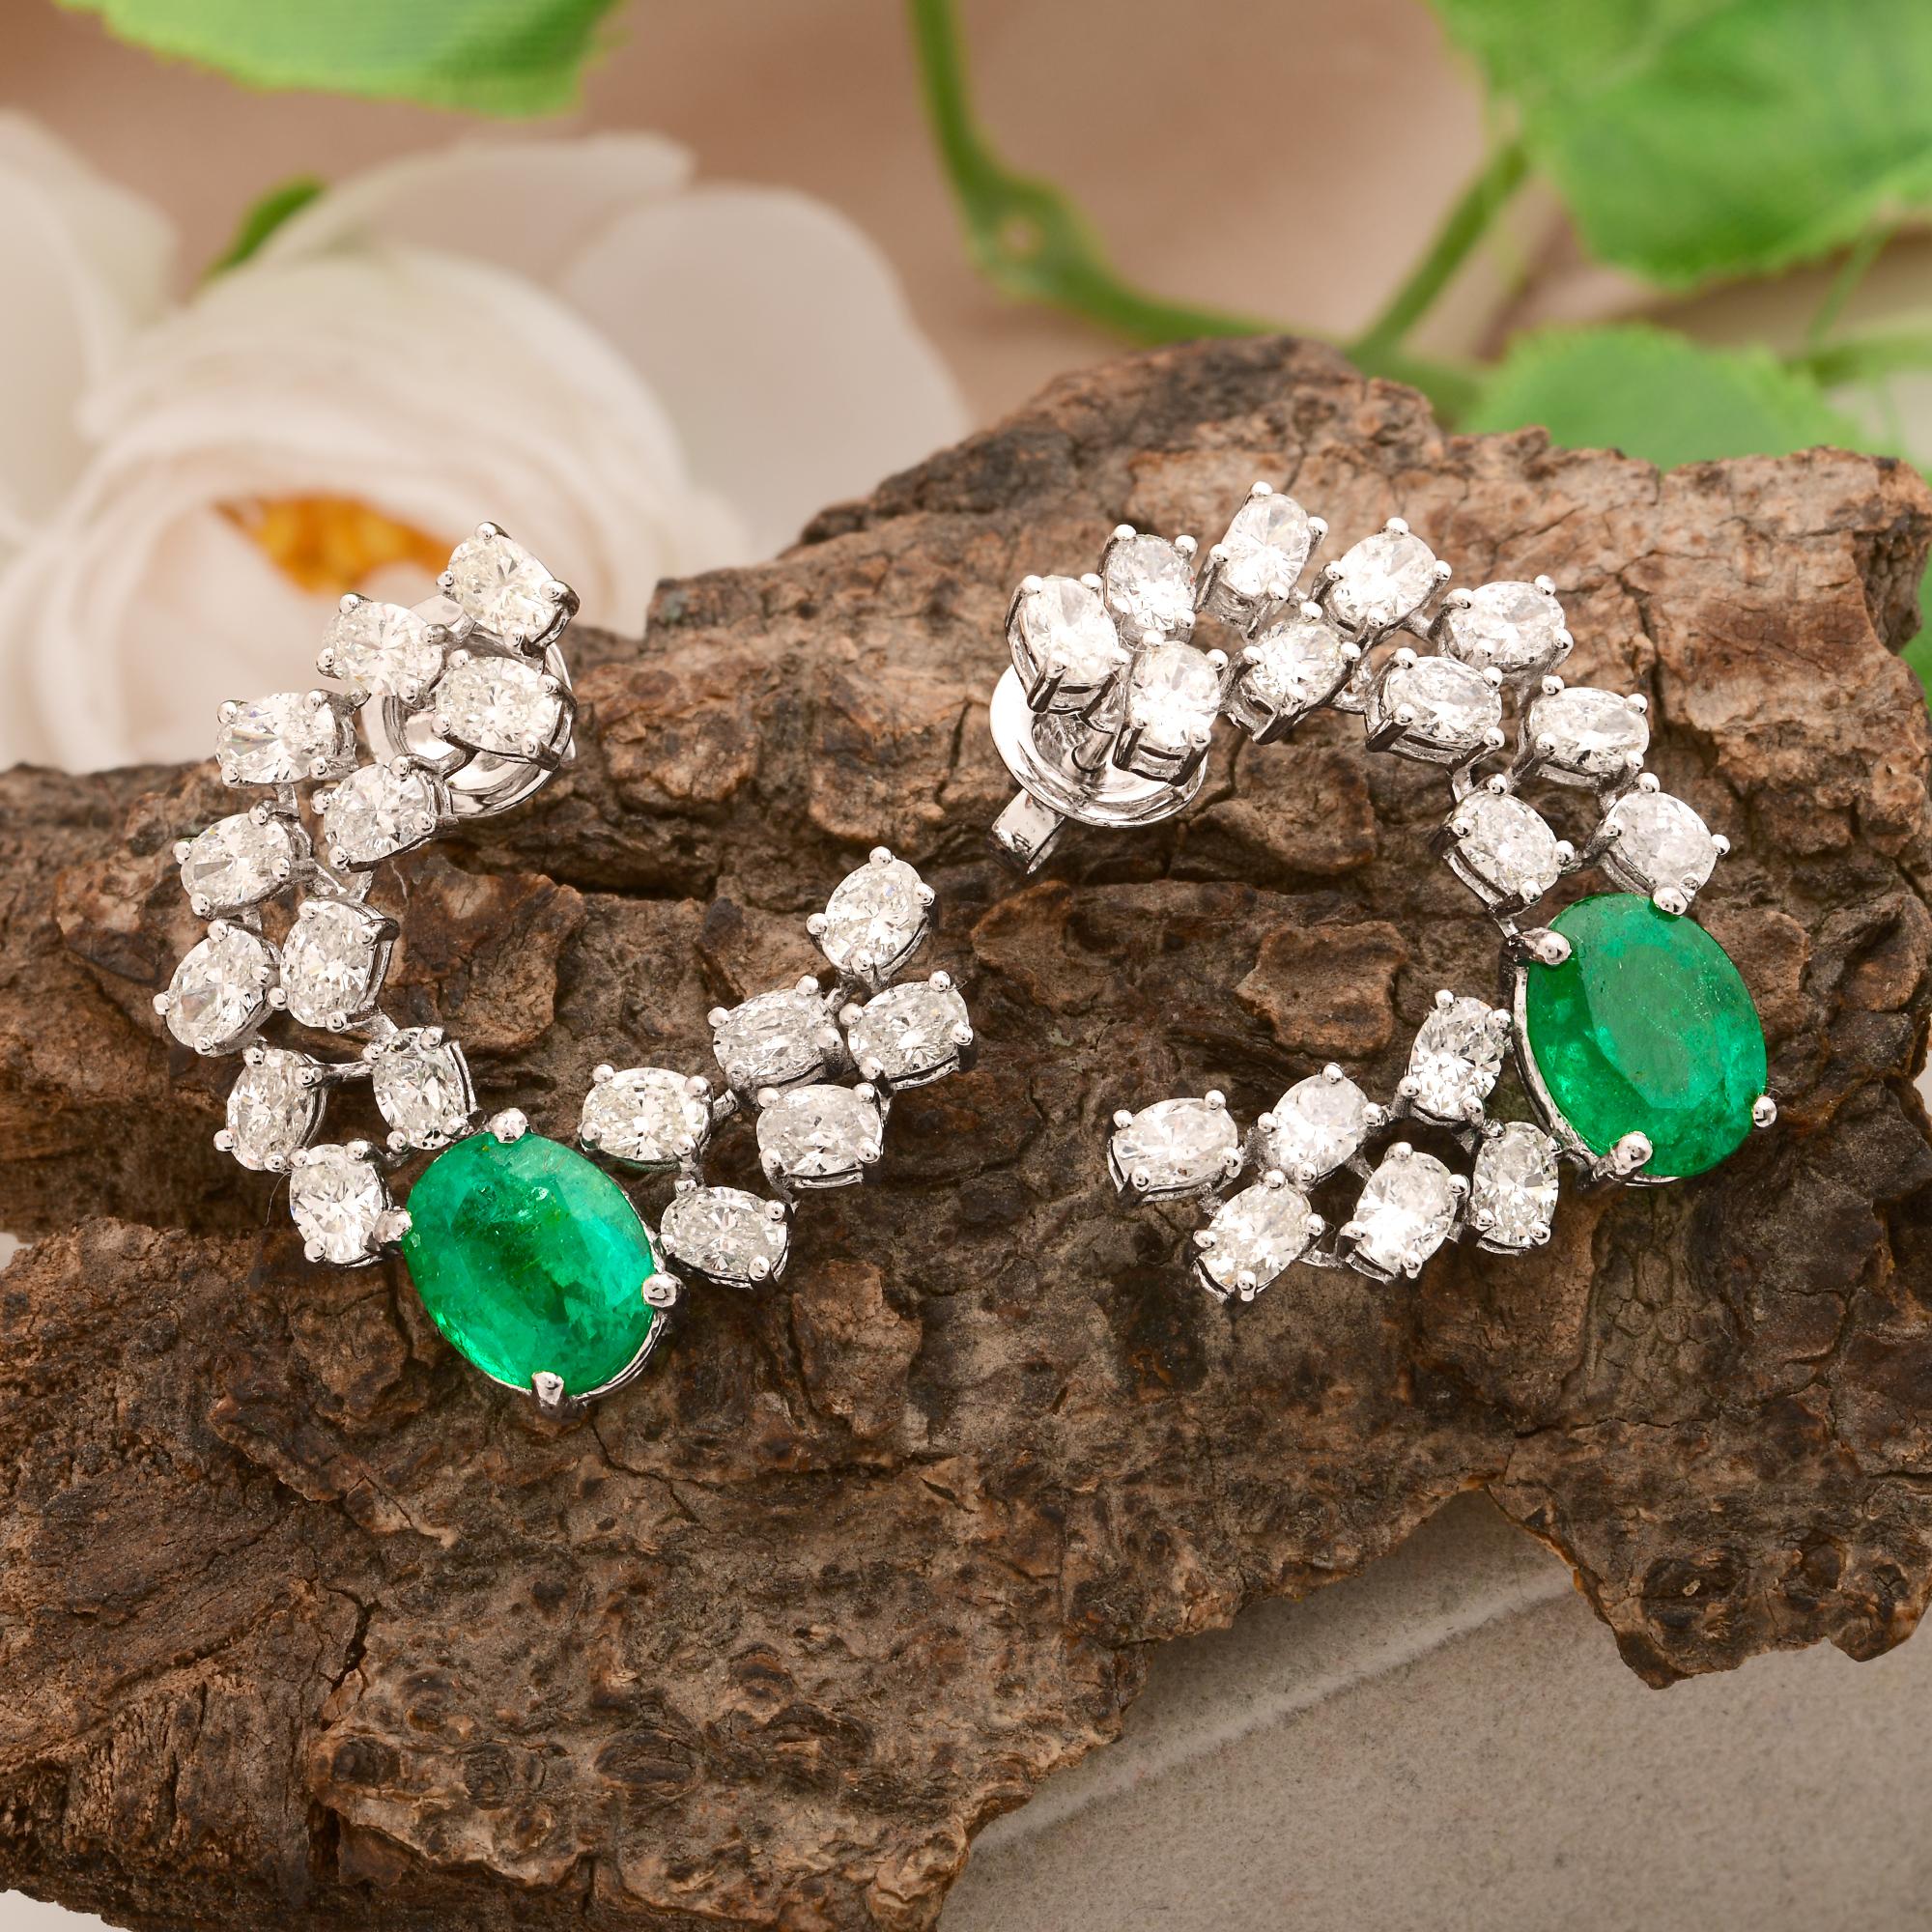 Modern Zambian Oval Emerald Gemstone Stud Earrings Diamond Solid 14k White Gold Jewelry For Sale